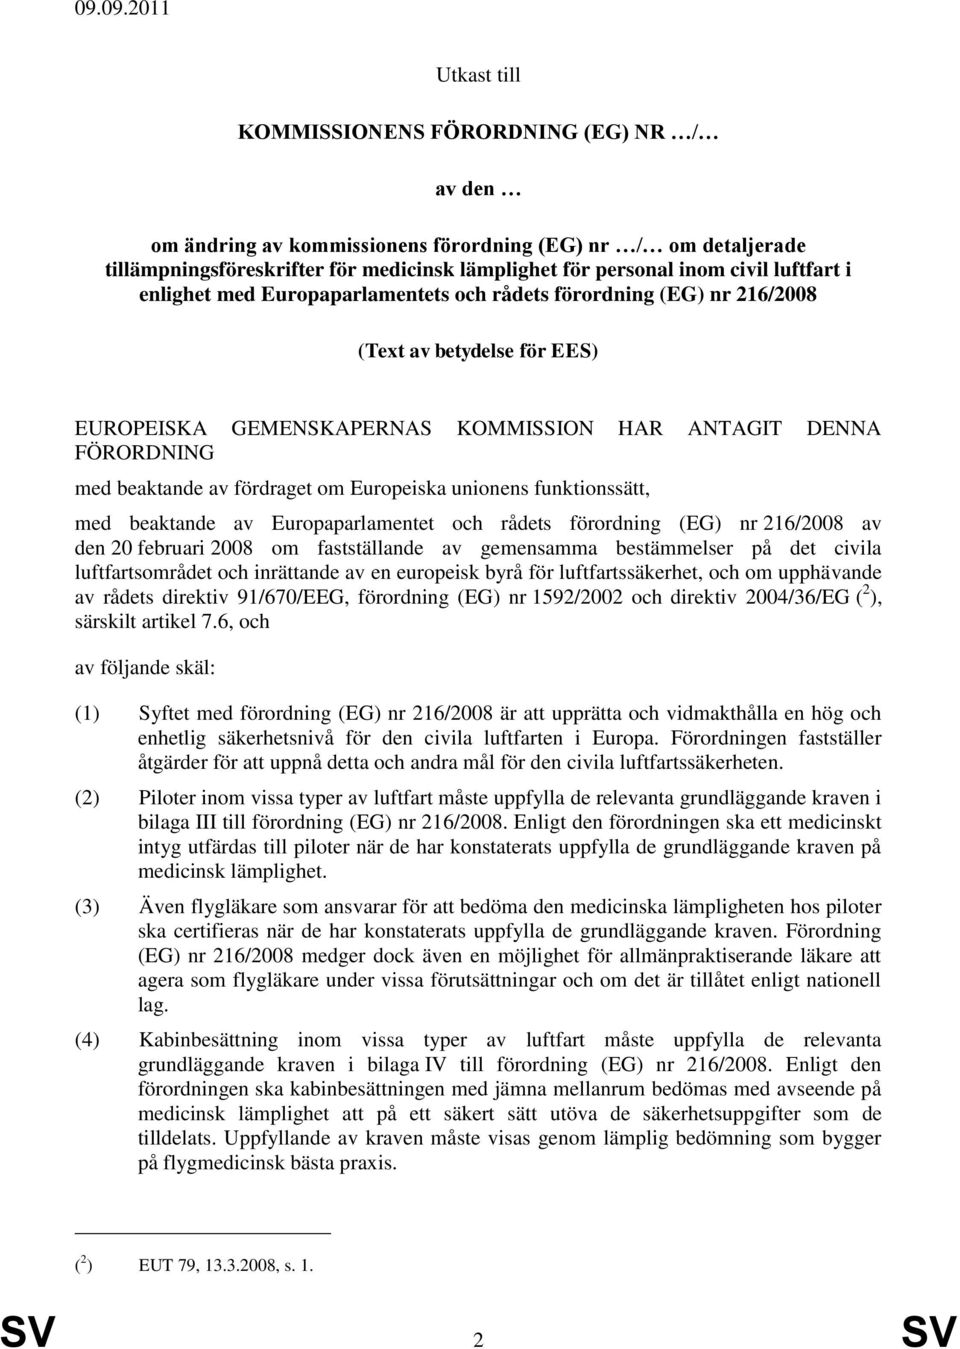 fördraget om Europeiska unionens funktionssätt, med beaktande av Europaparlamentet och rådets förordning (EG) nr 216/2008 av den 20 februari 2008 om fastställande av gemensamma bestämmelser på det